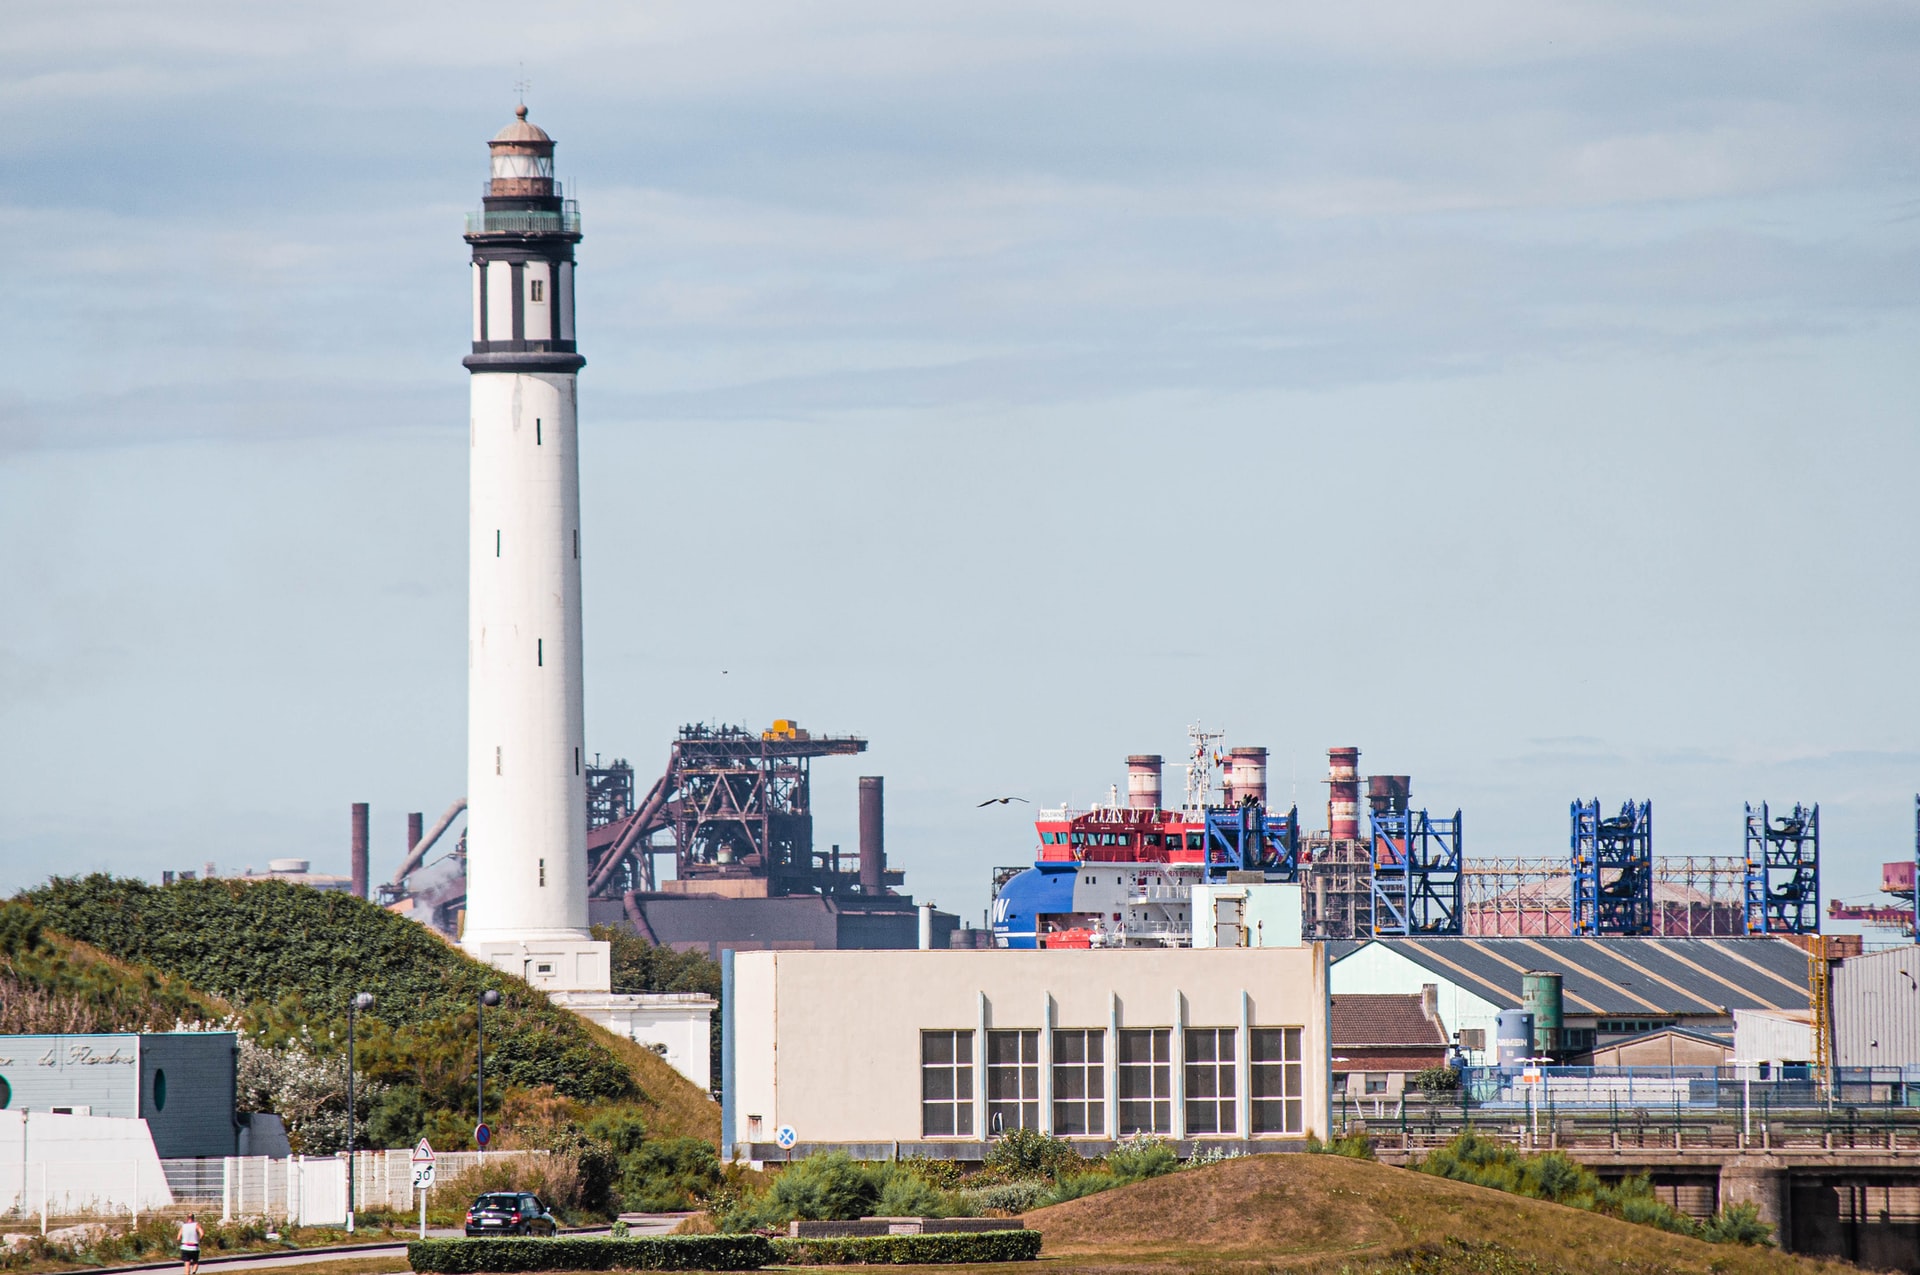 Phare et usines dans la zone portuaire de Dunkerque